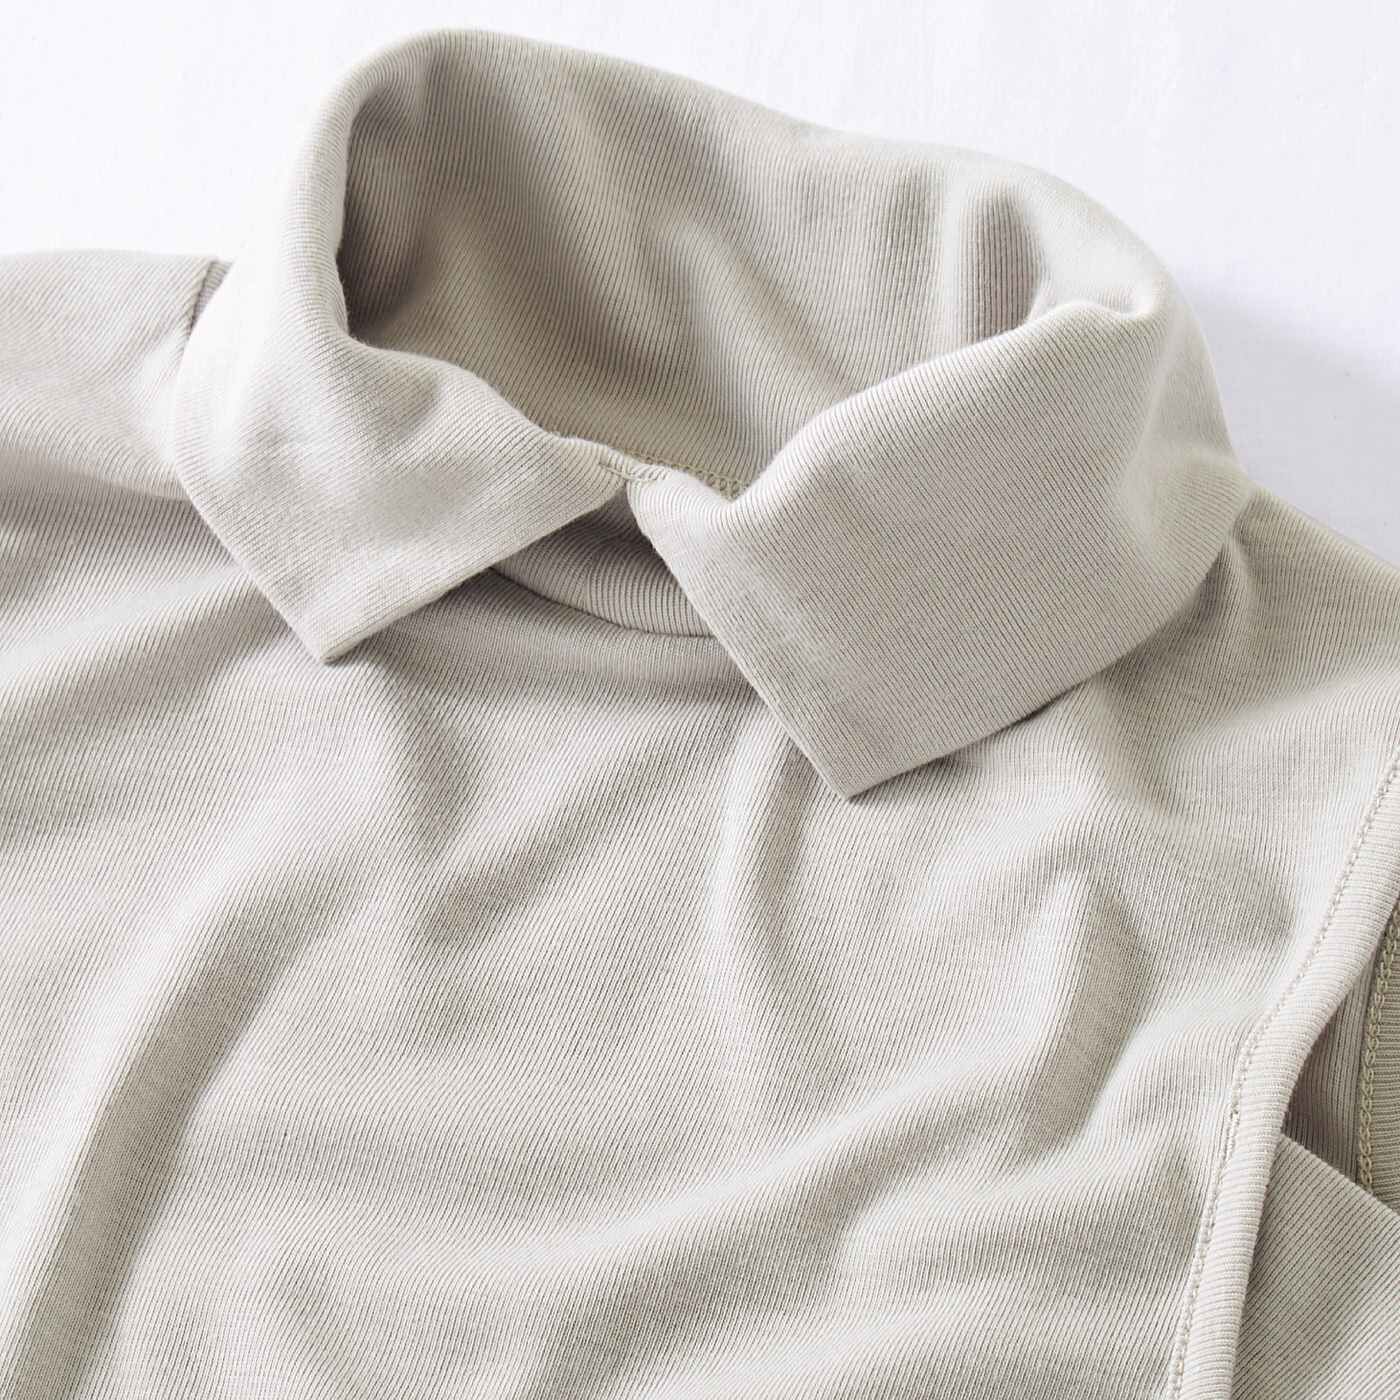 Real Stock|シャツ見えできちんと印象にチェンジ　衿付きタンクトップ〈アイボリー〉|伸縮性のあるカットソー素材で着心地も快適です。　※お届けするカラーとは異なります。